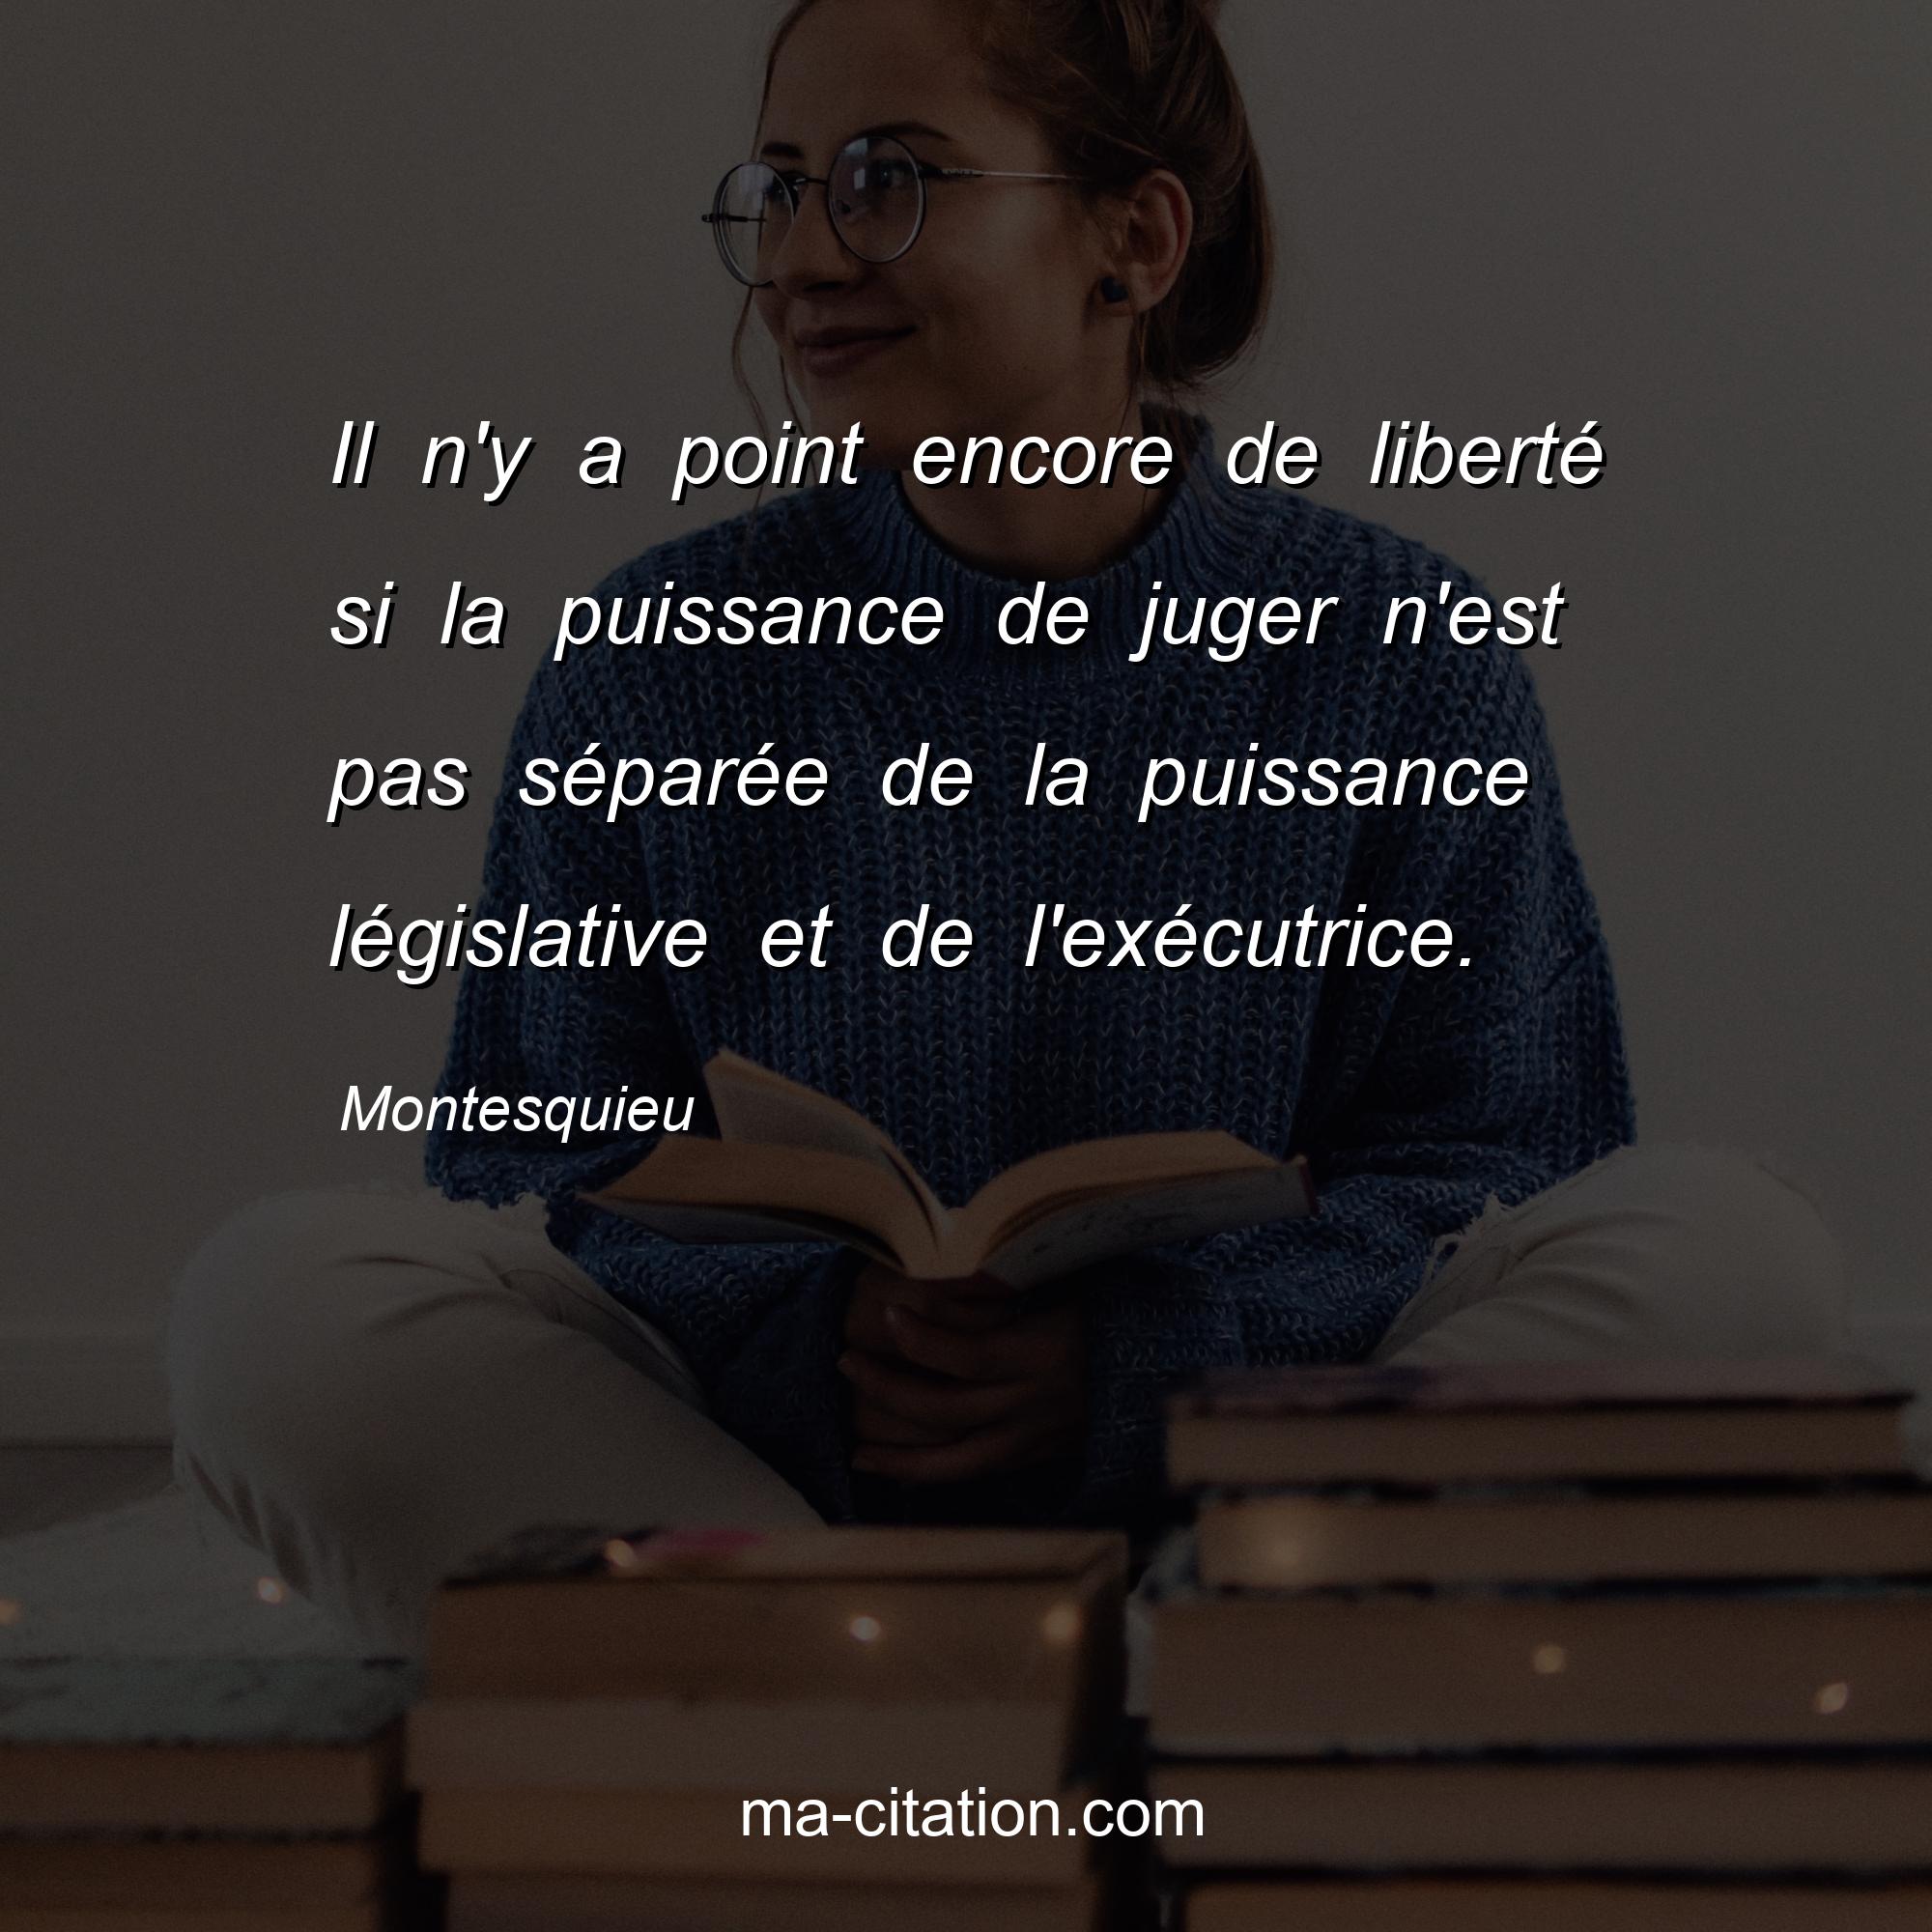 Montesquieu : Il n'y a point encore de liberté si la puissance de juger n'est pas séparée de la puissance législative et de l'exécutrice.